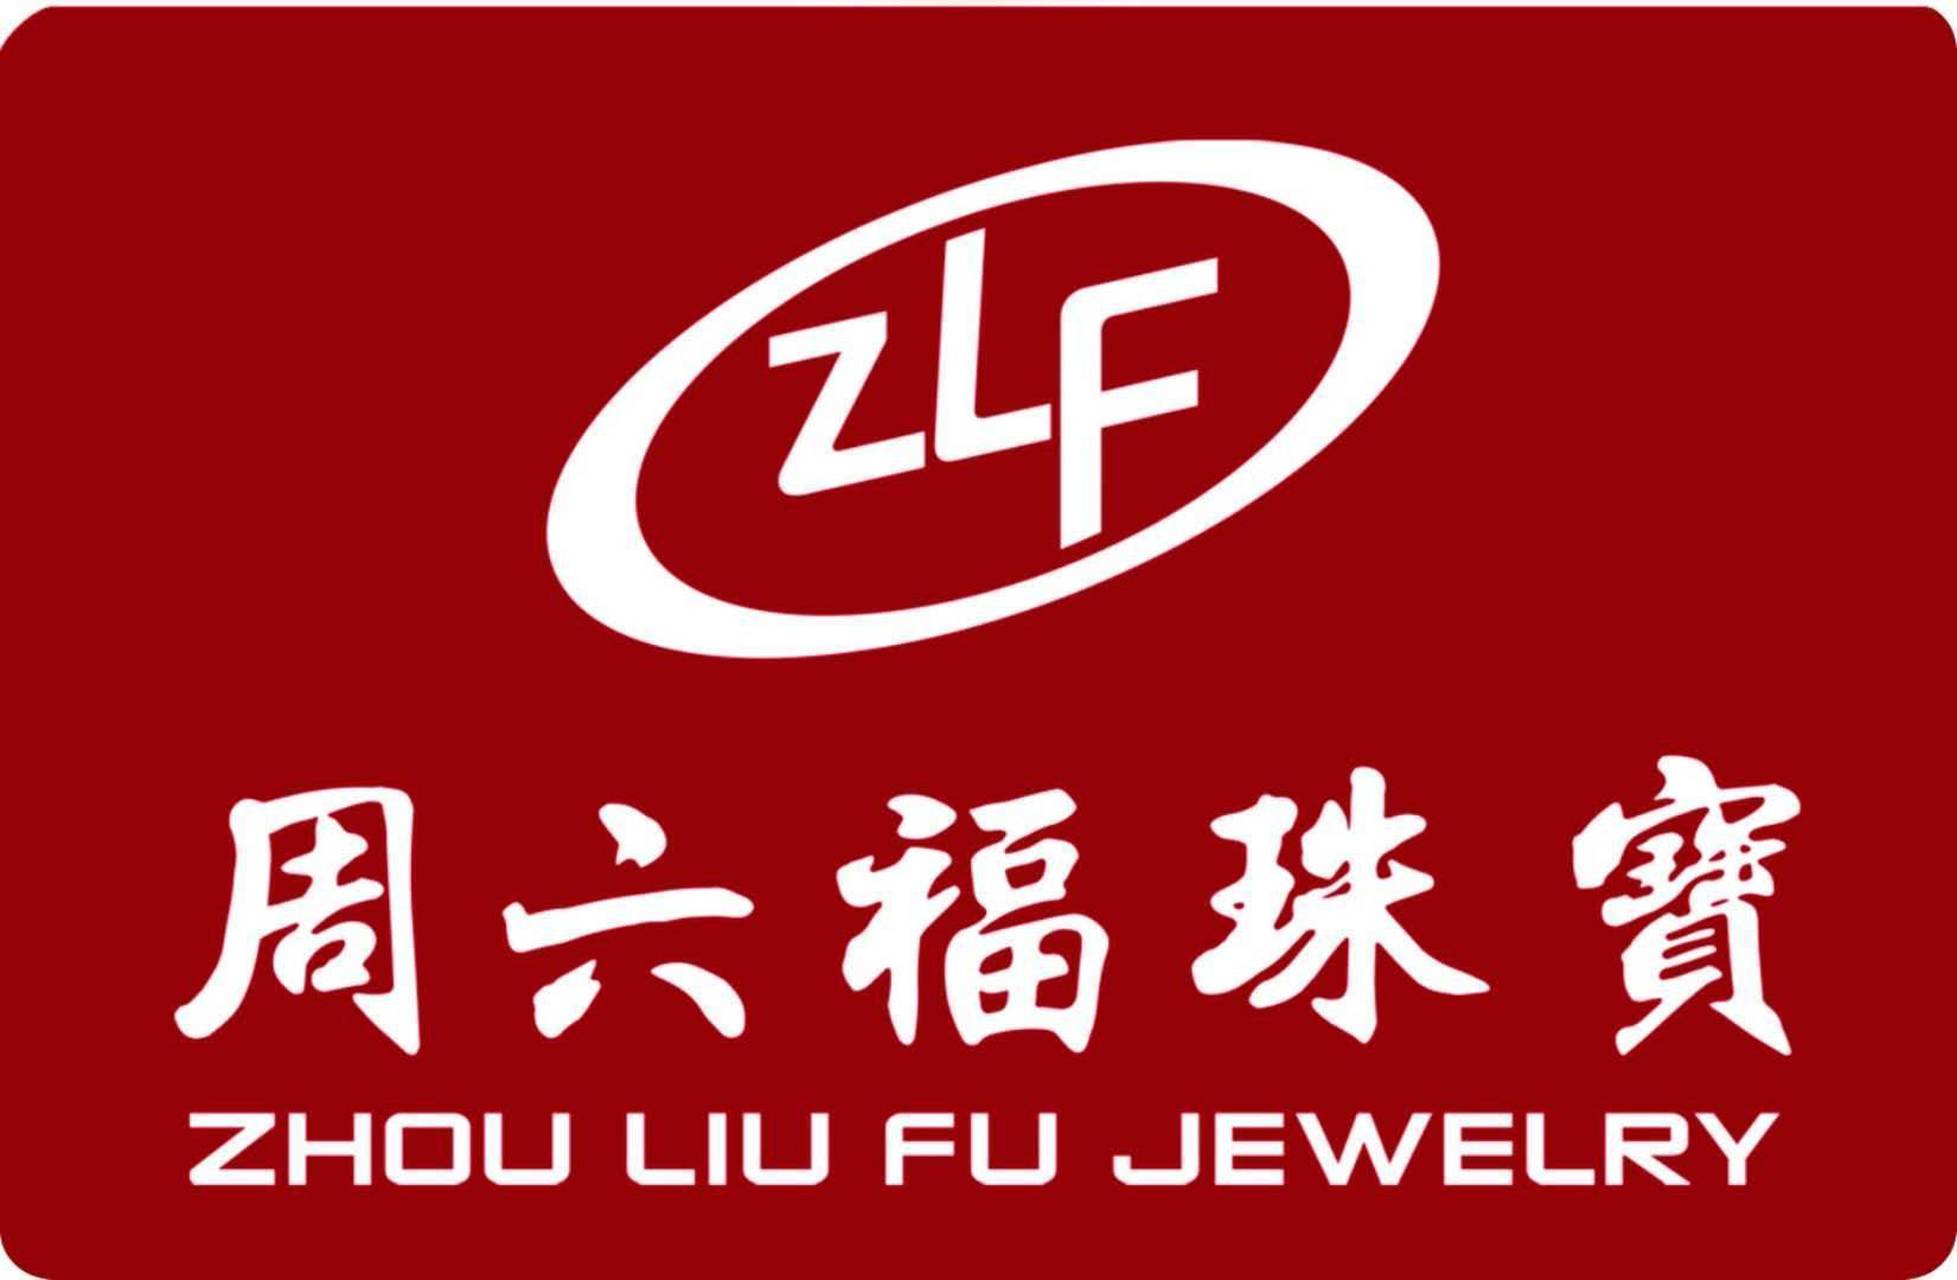 香港周六福珠宝商标图片